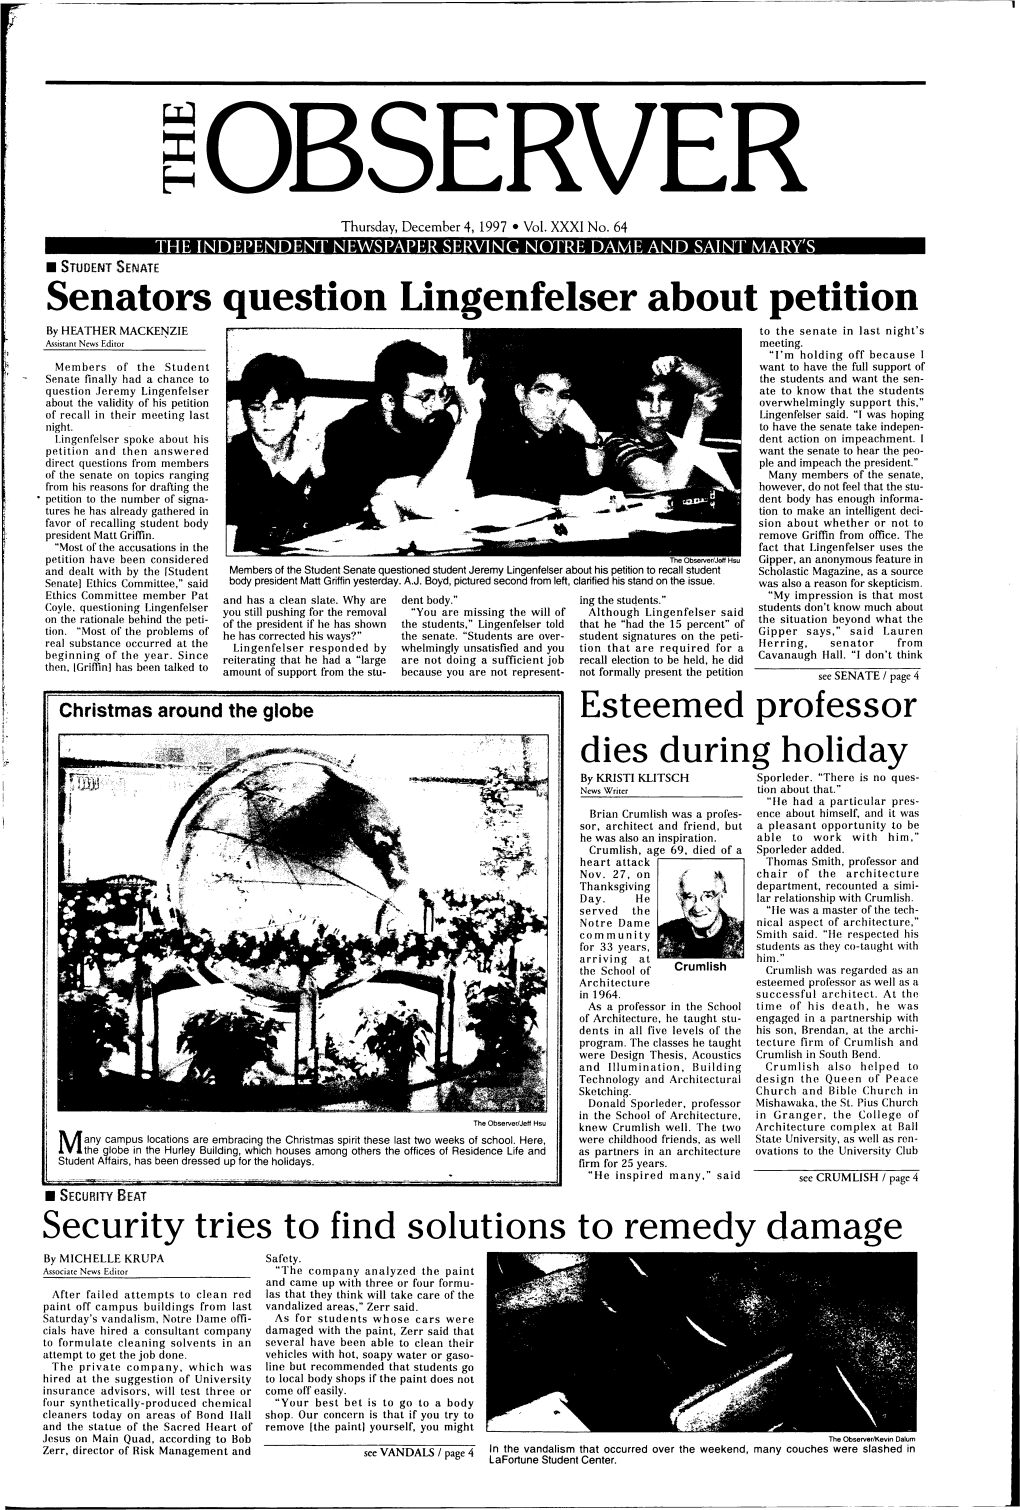 Senators Question Lingenfelser About Petition